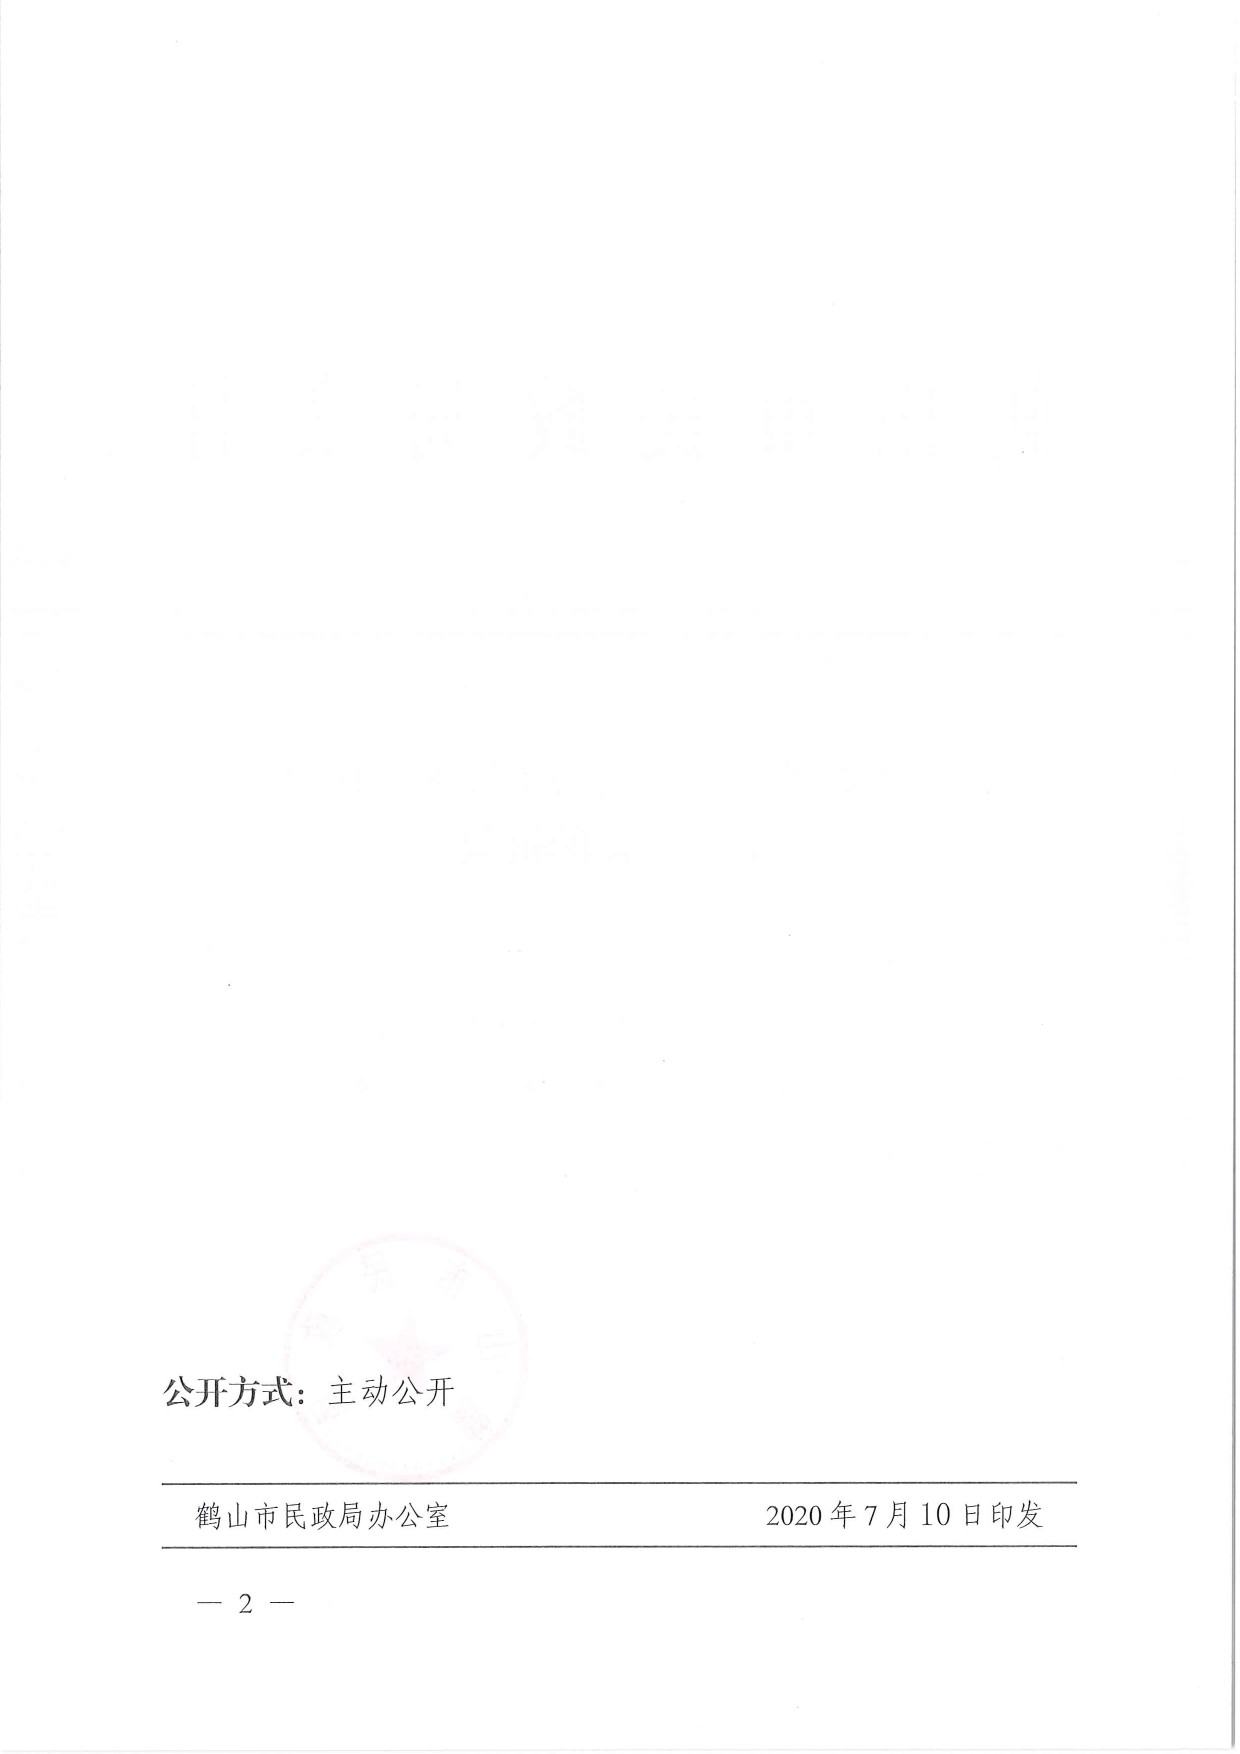 鹤民社〔2020〕41号关于准予鹤山市古劳大埠老人协会变更登记的批复-2.jpg